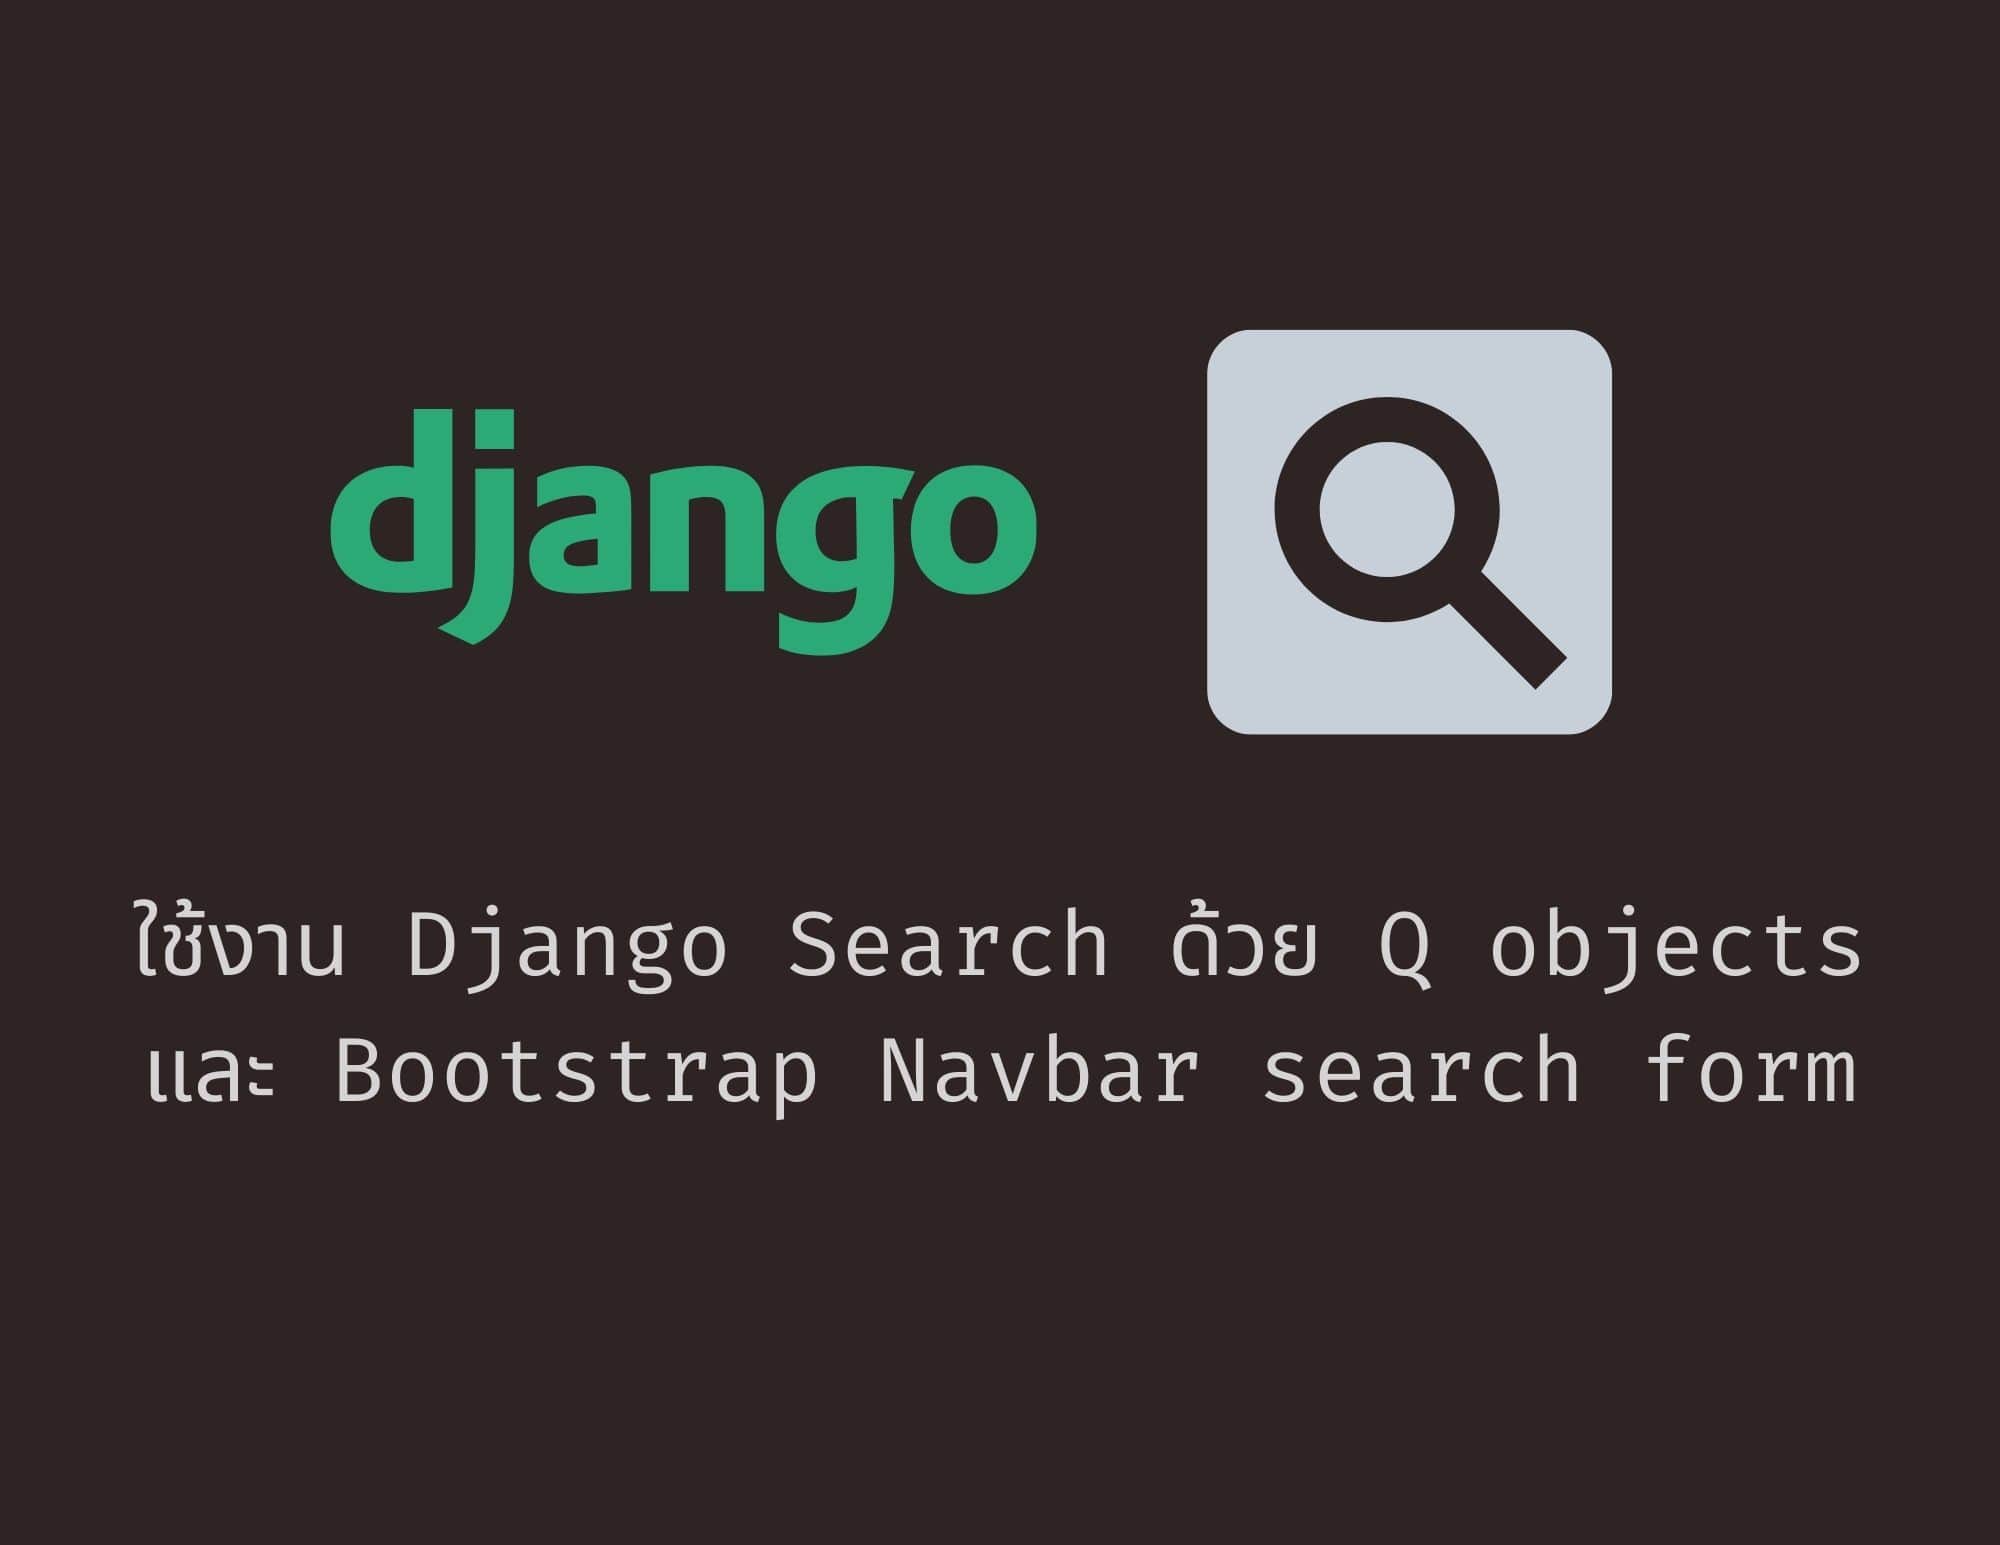 Django Search การประยุกต์ใช้งาน